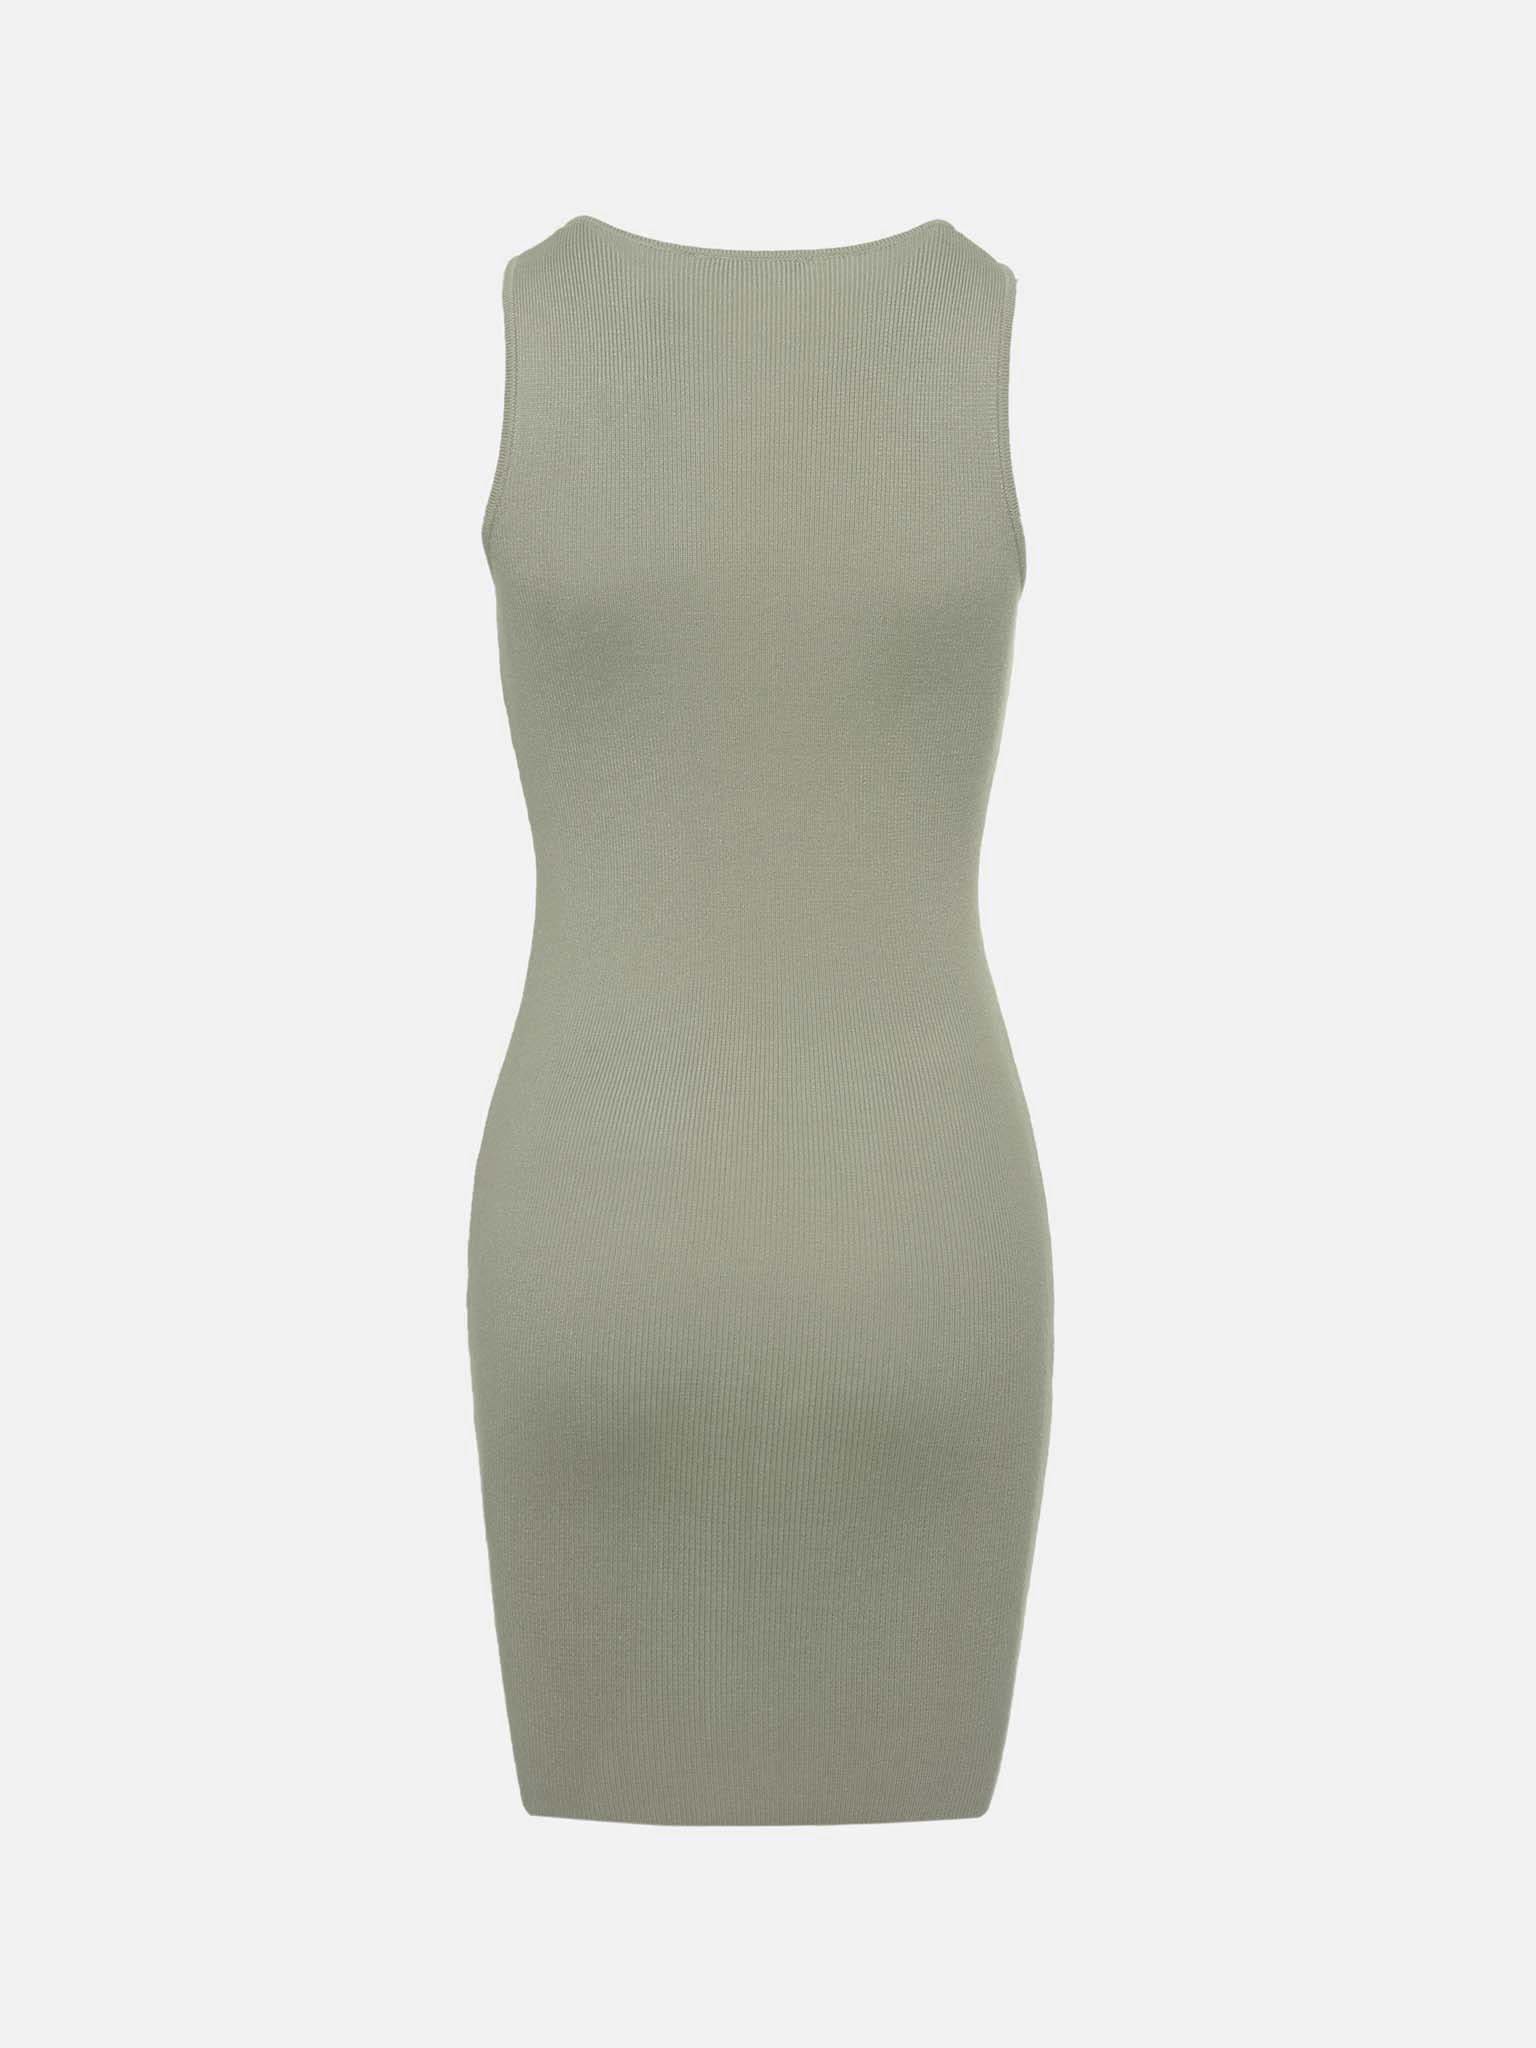 LICHI - Online fashion store :: Sleeveless jersey mini dress